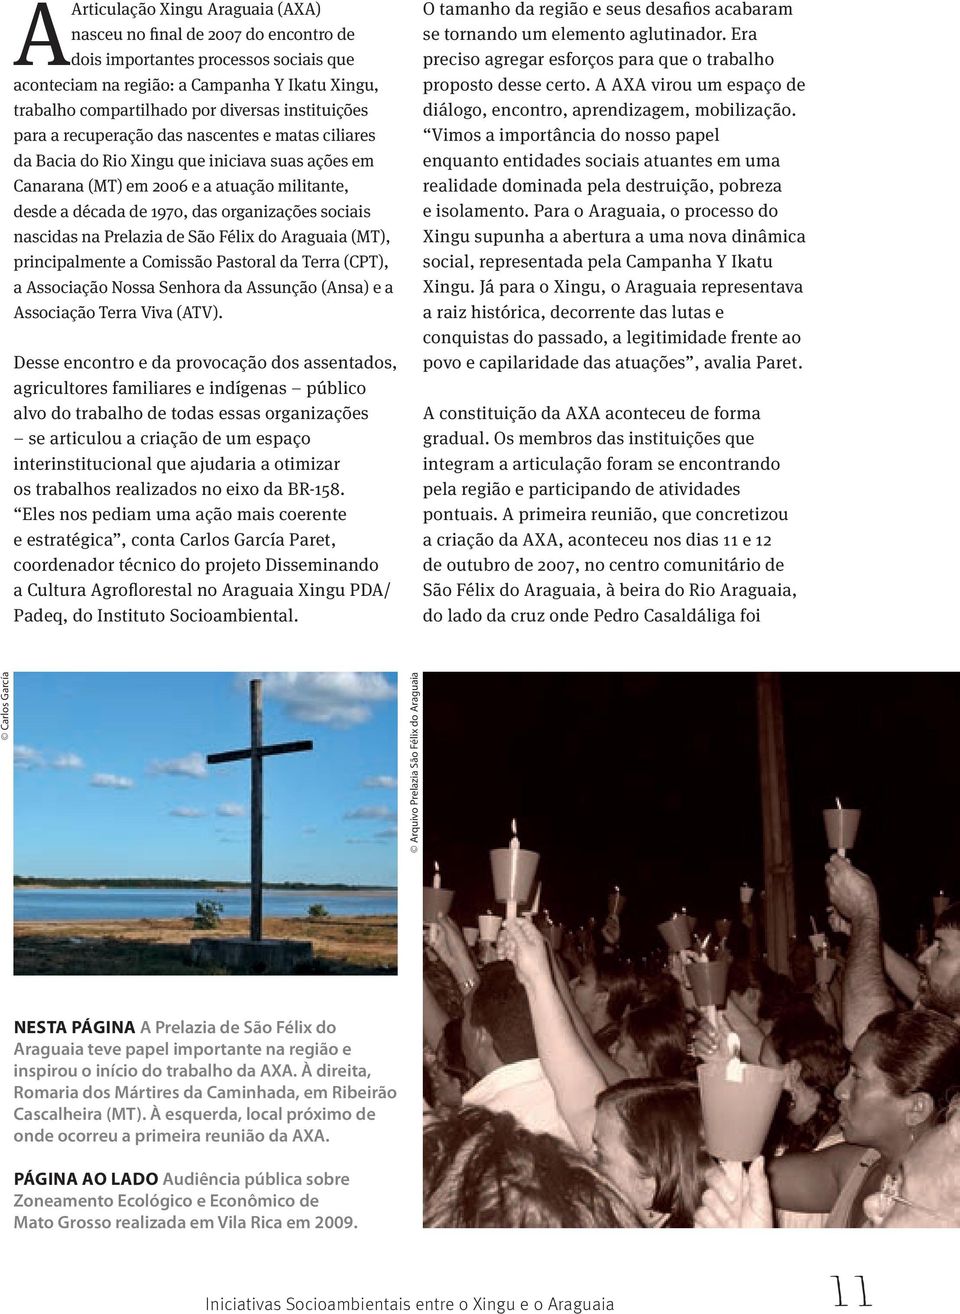 sociais nascidas na Prelazia de São Félix do Araguaia (MT), principalmente a Comissão Pastoral da Terra (CPT), a Associação Nossa Senhora da Assunção (Ansa) e a Associação Terra Viva (ATV).